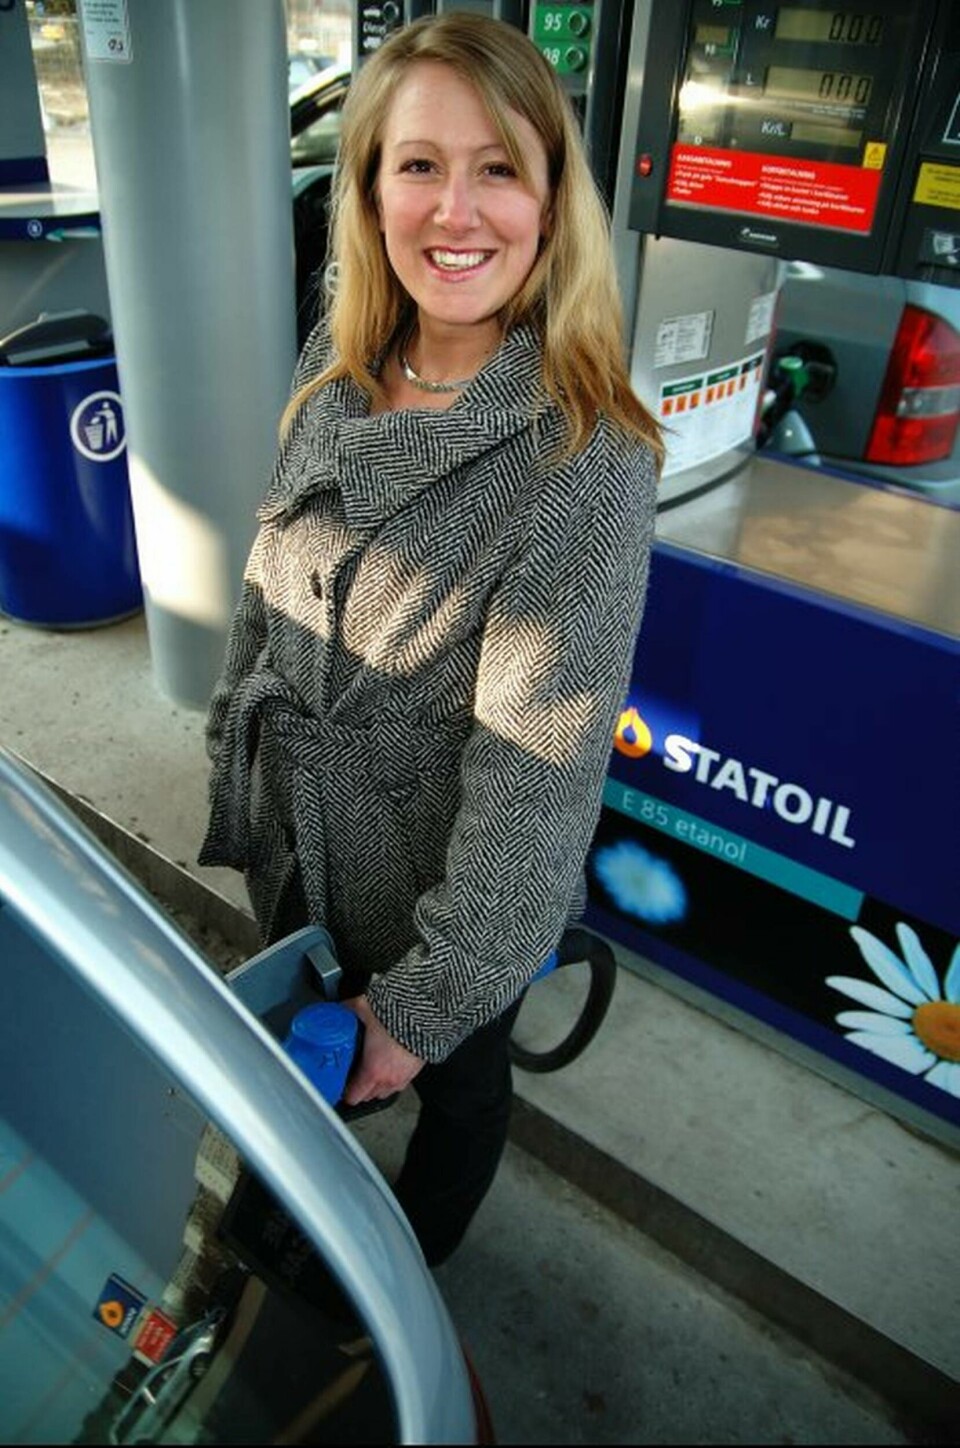 Statoils E85-kunder kan glädjas åt 55 öre lägre pris från och med i dag. Foto: Statoil